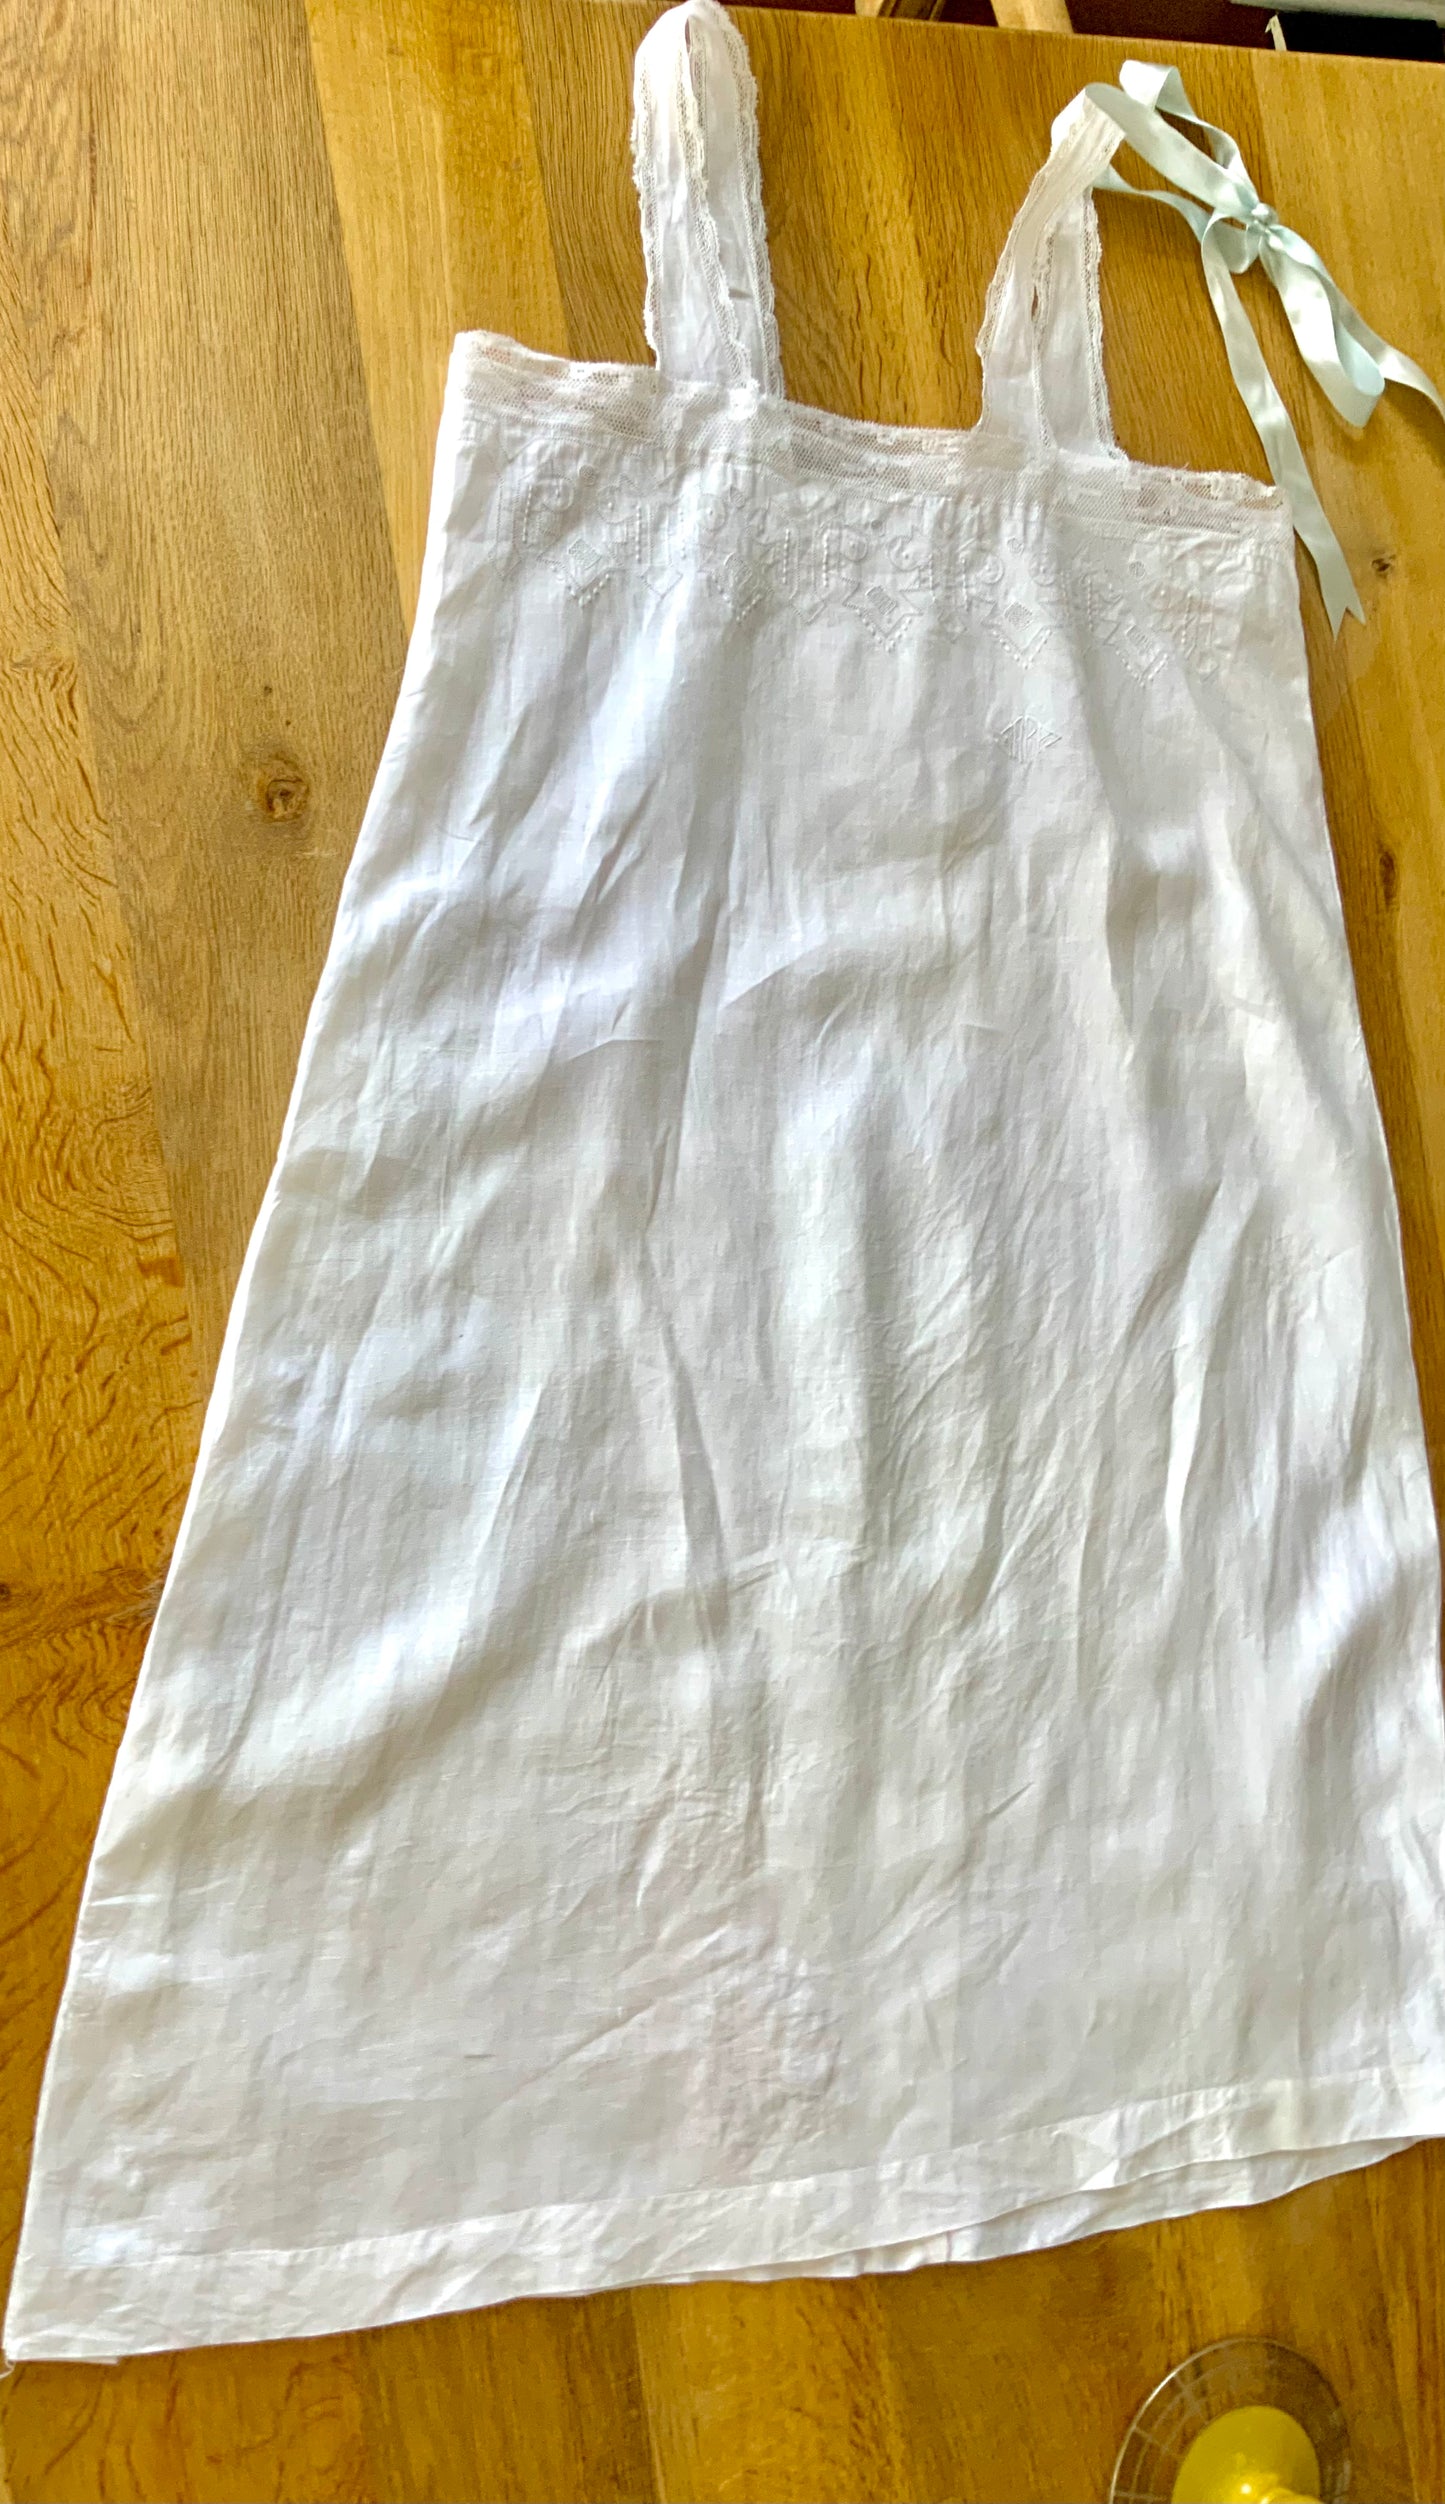 Antique Cotton Dress - 1900